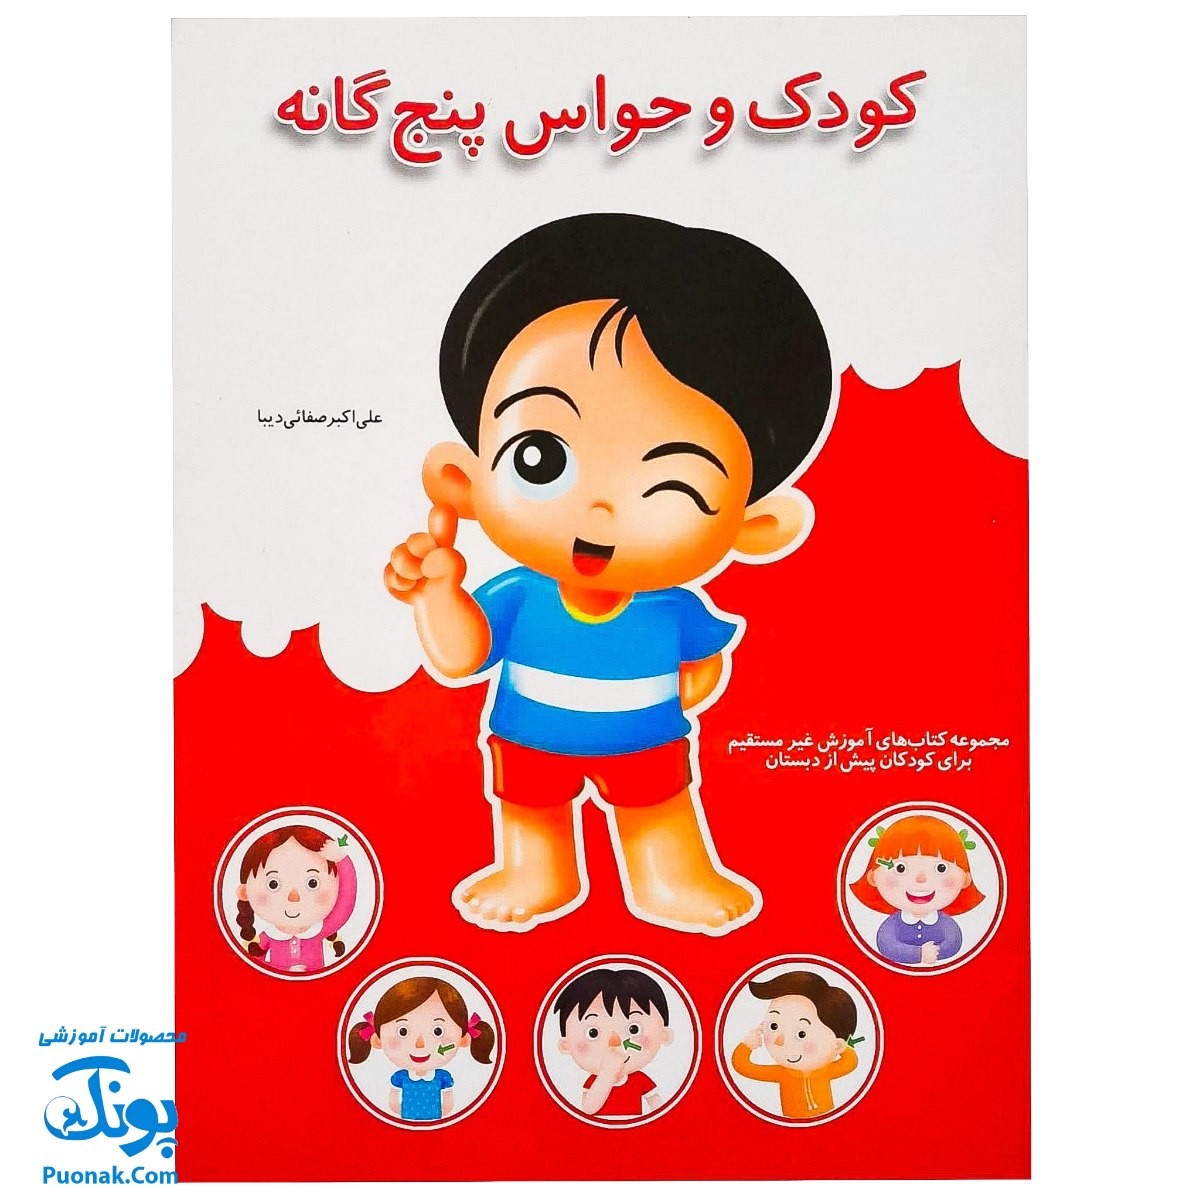 کتاب آموزشی کودک و حواس پنج‌گانه (مجموعه کتابهای آموزش غیر مستقیم برای کودکان پیش از دبستان)